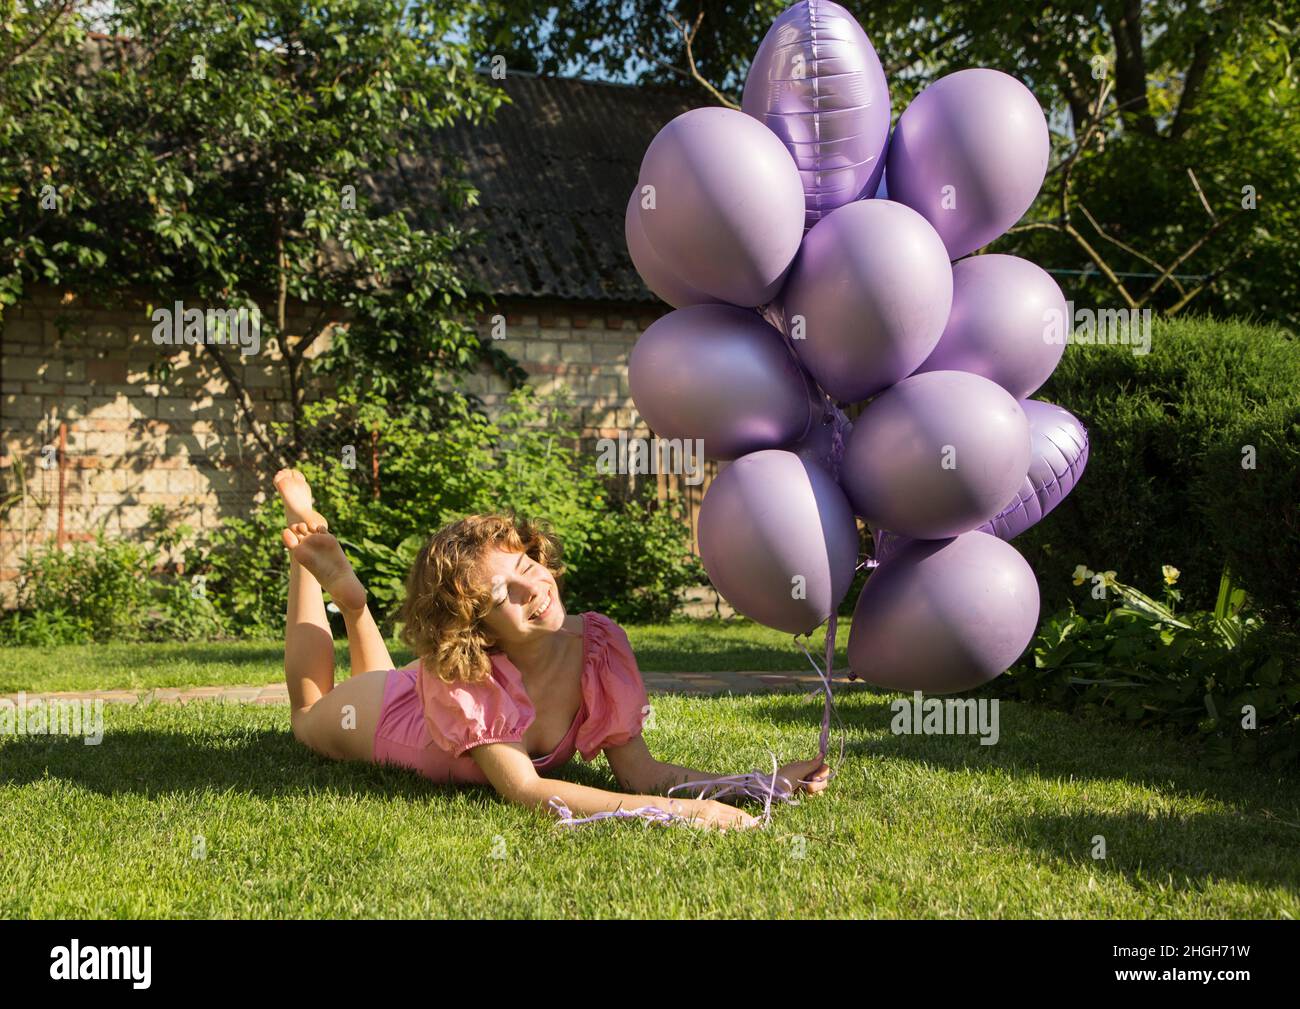 bonne belle fille tendre 17-18 ans avec un bouquet de ballons d'hélium violets se trouve sur la pelouse verte.Anniversaire fille.Happy Day. Concept de joie, positiv Banque D'Images